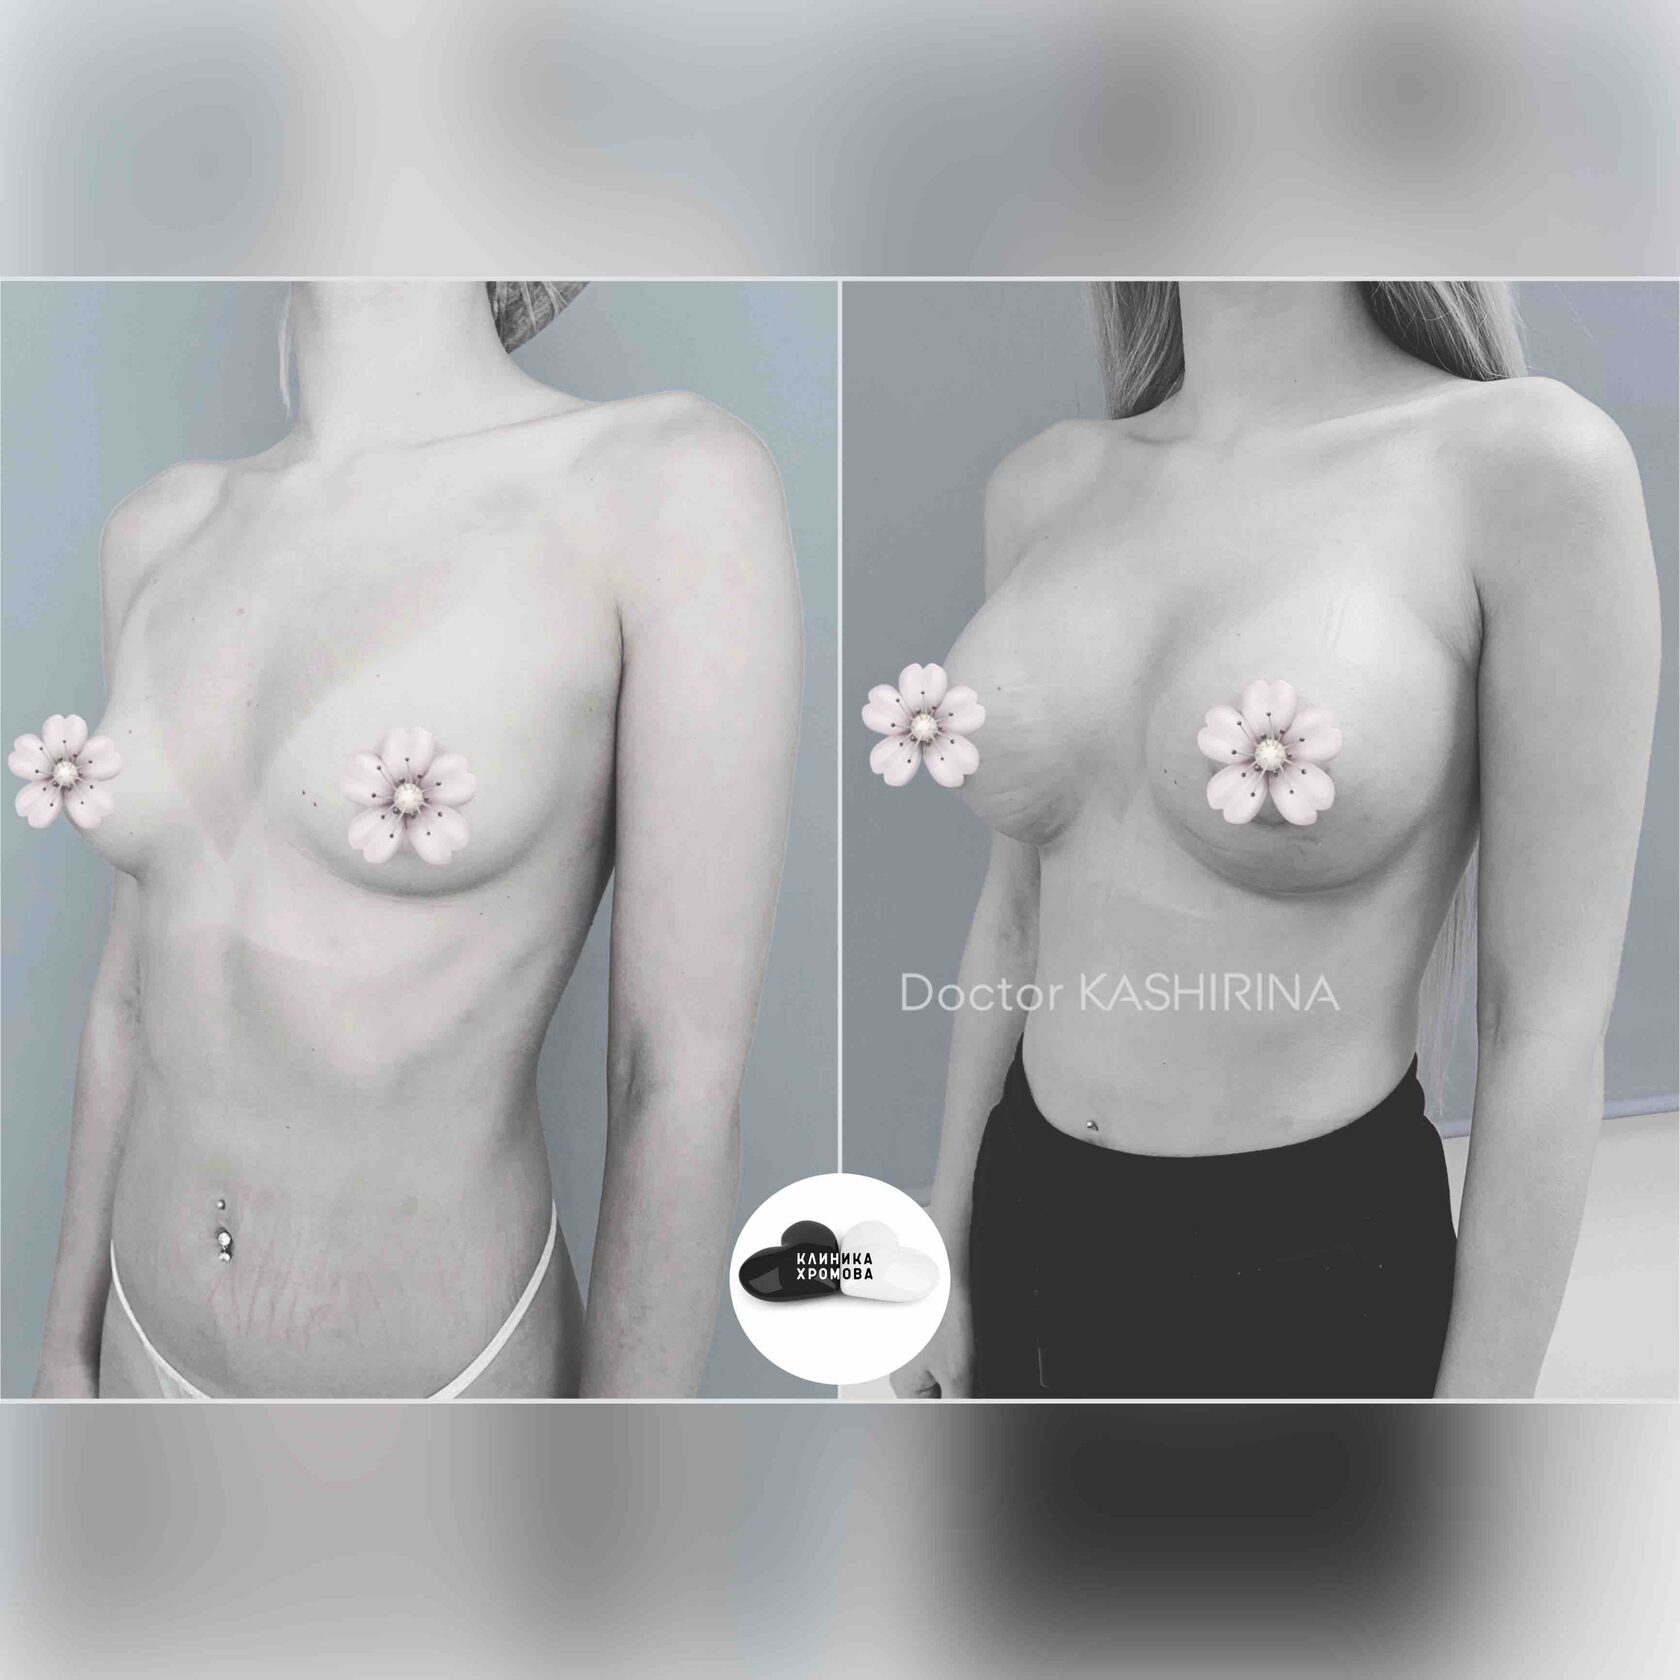 разные импланты на одну грудь фото 15